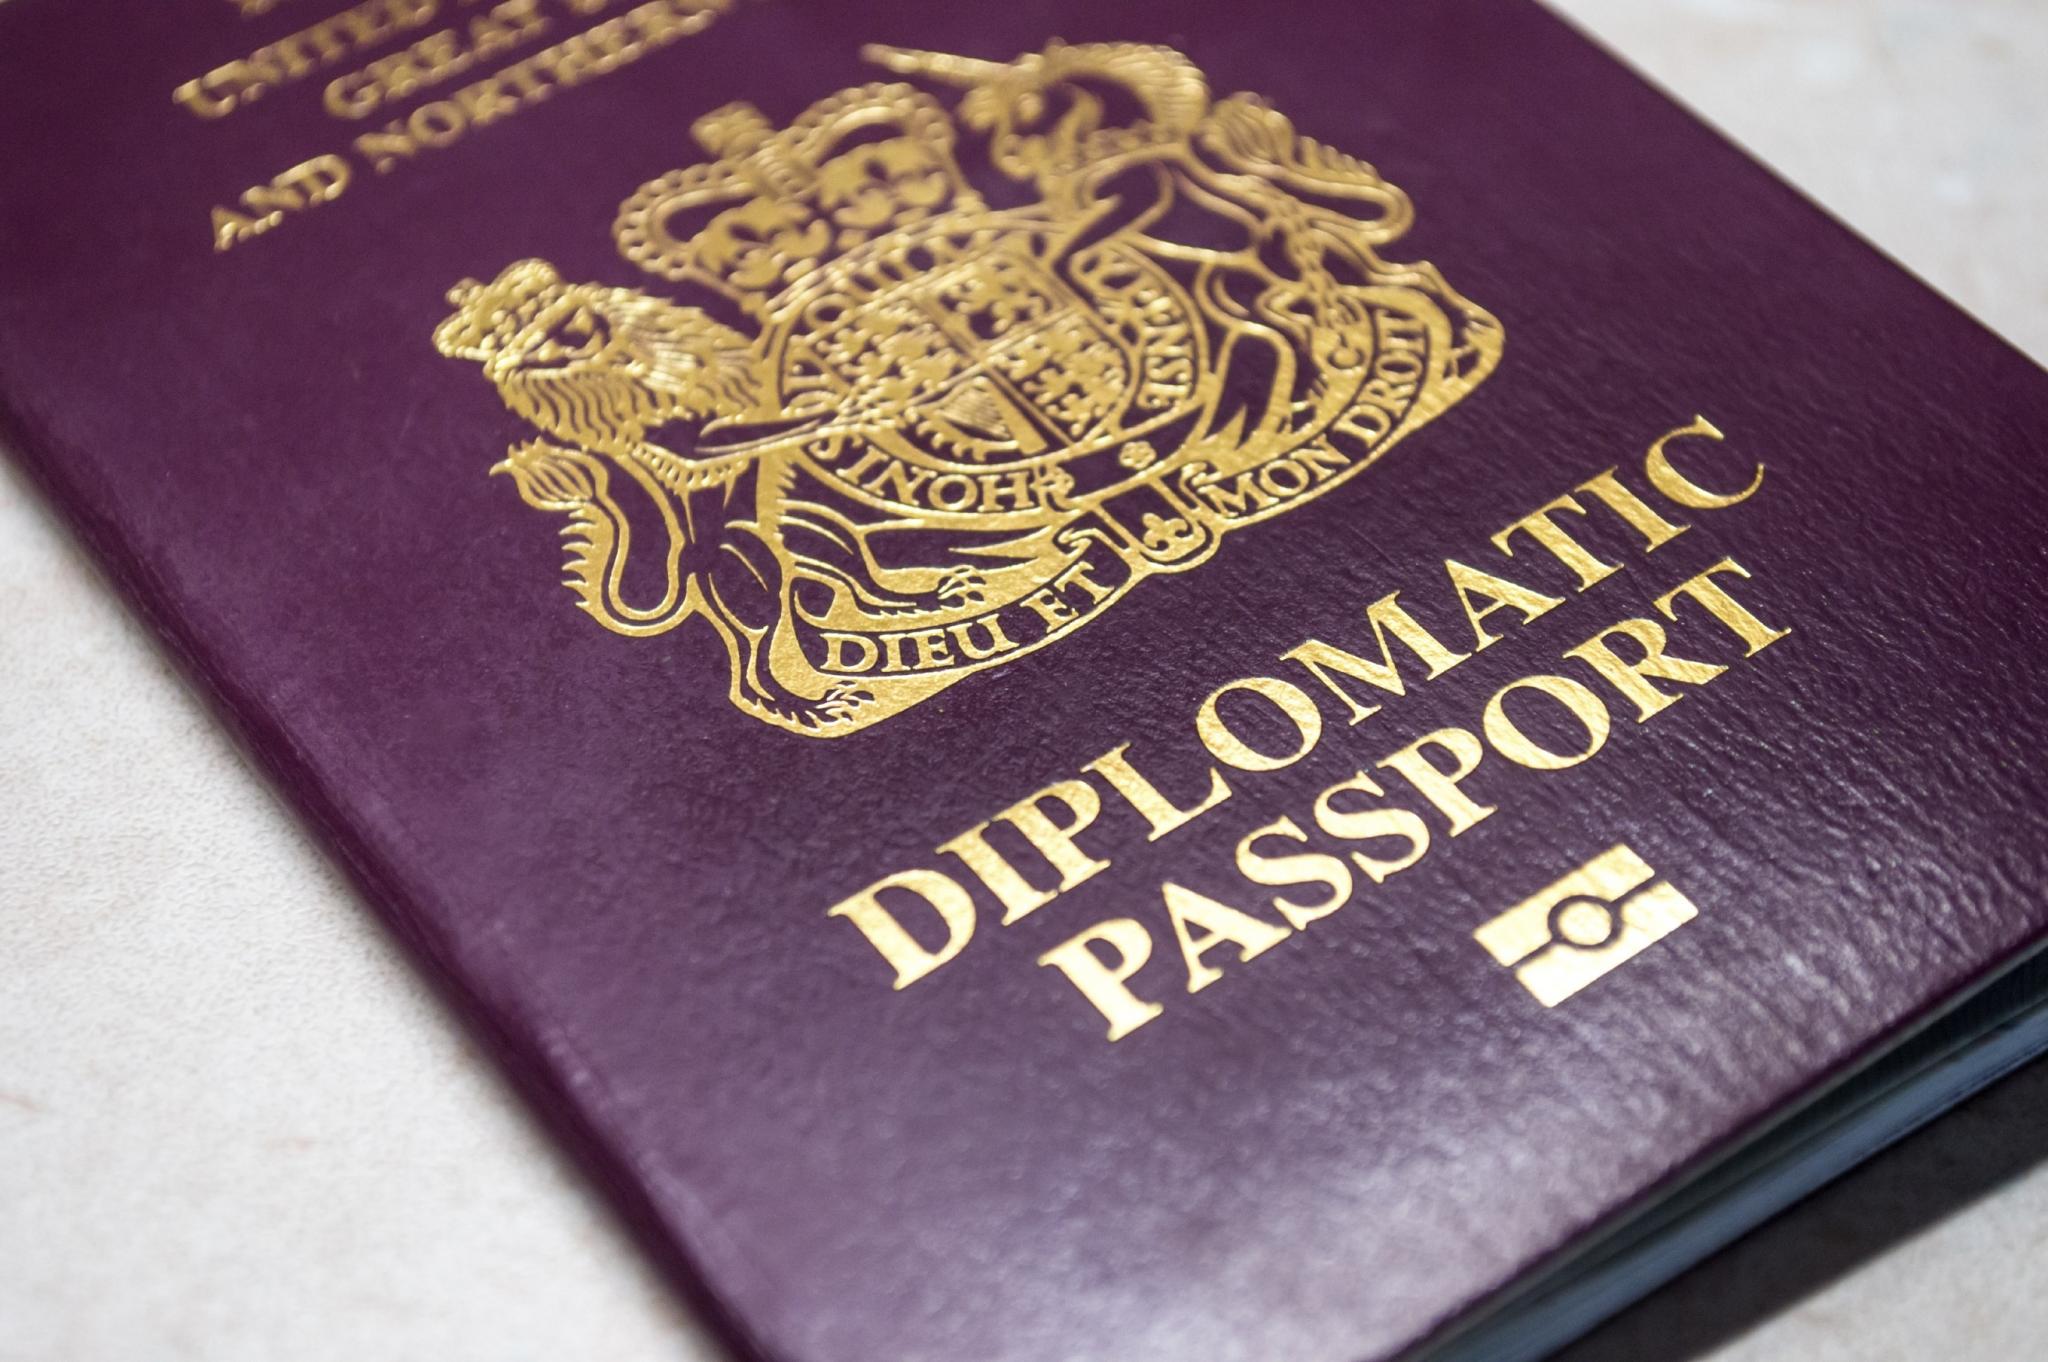 British Diplomatic Passport